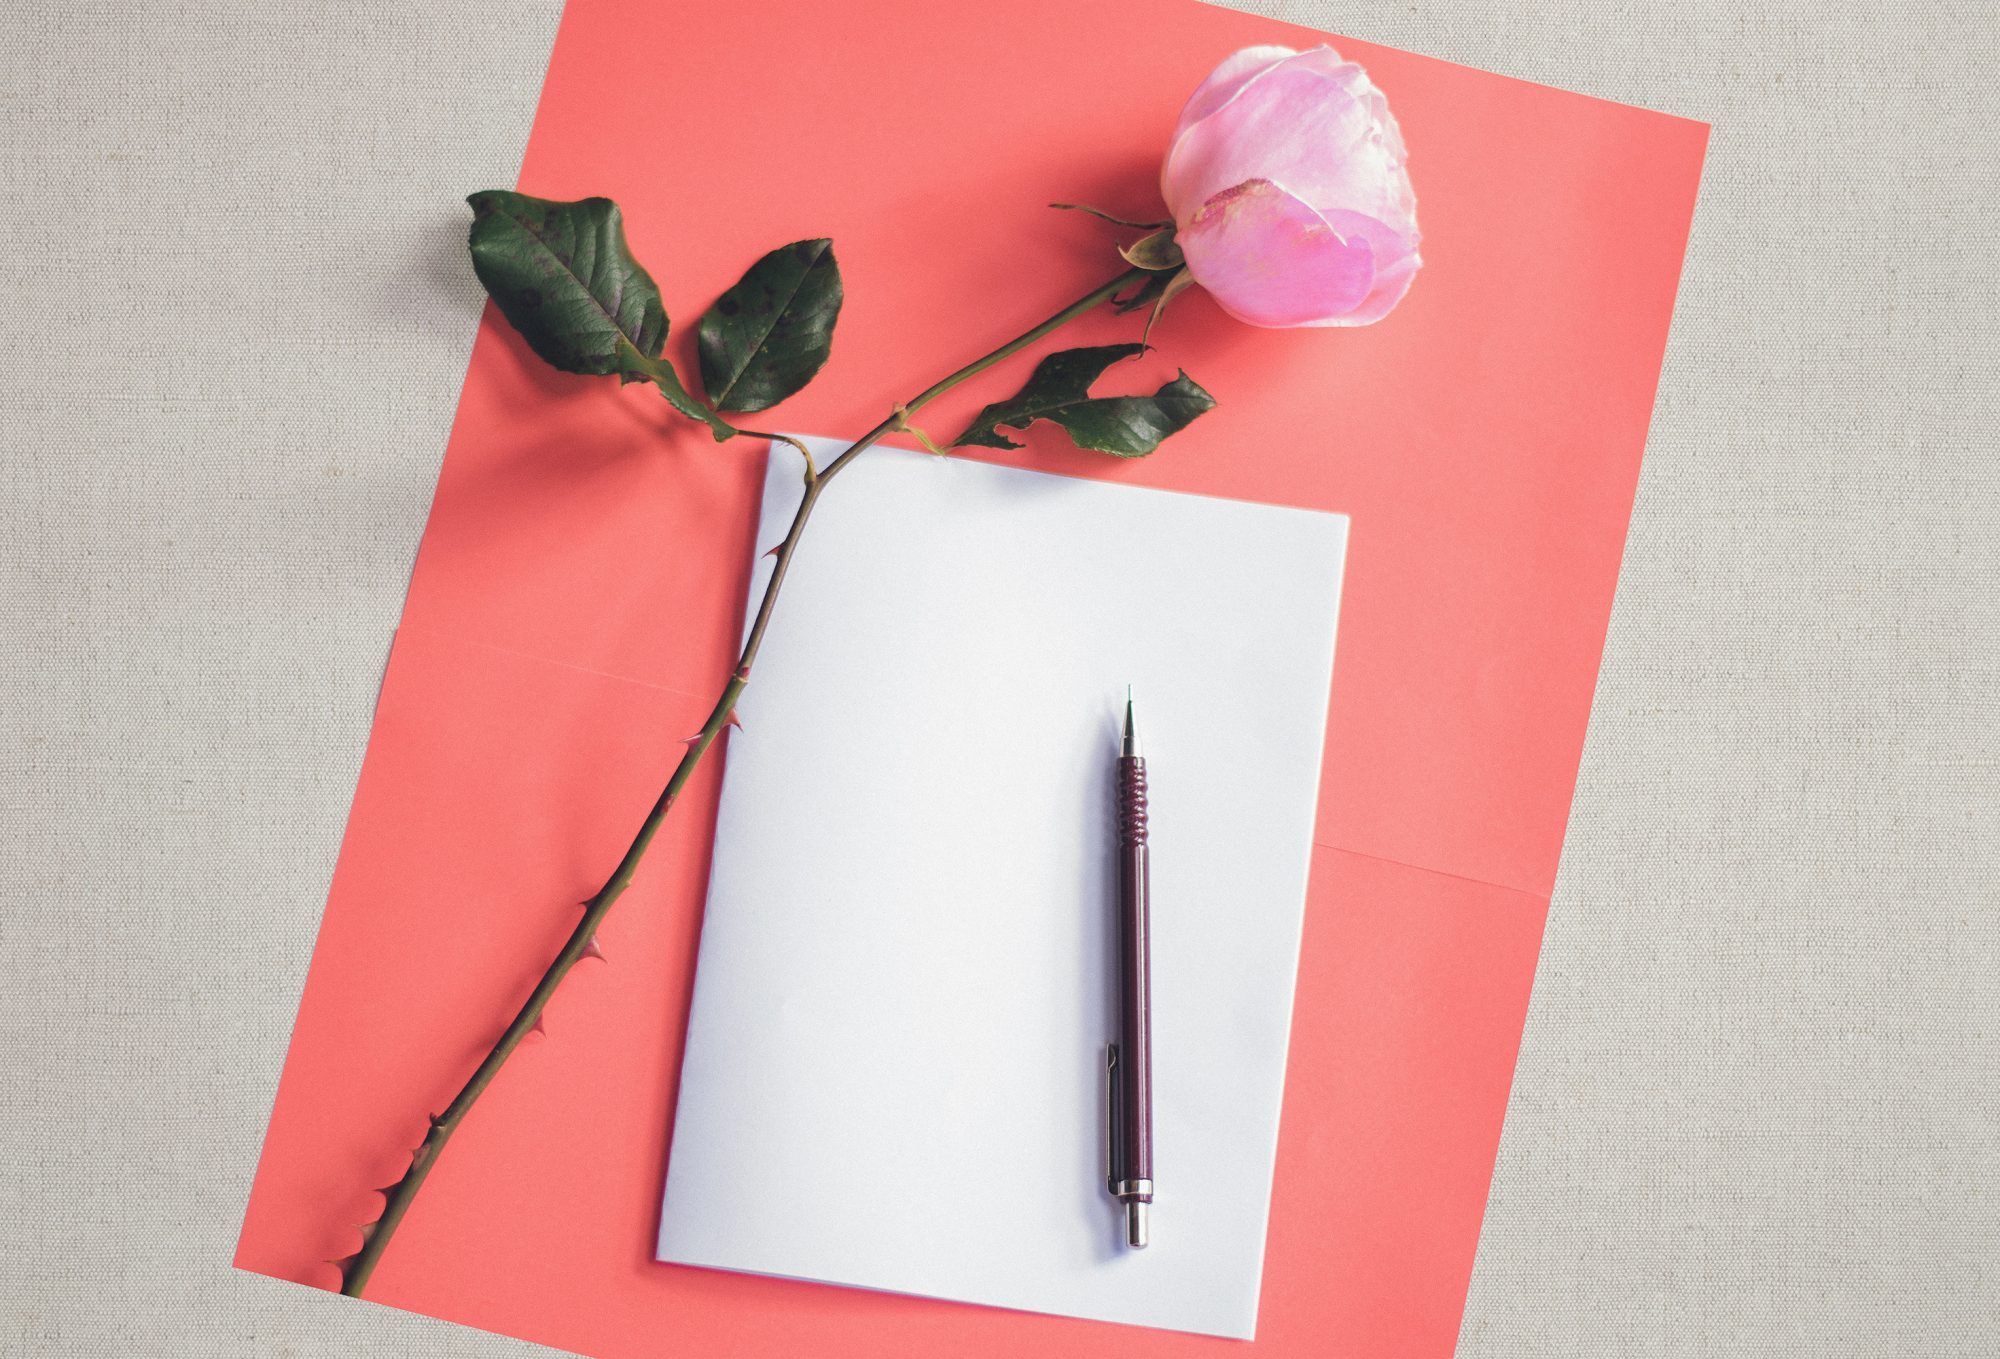 Ըստ հետազոտության՝ ձեռքով նամակներ գրելու կյանքի հաստատող 5 առավելություններ